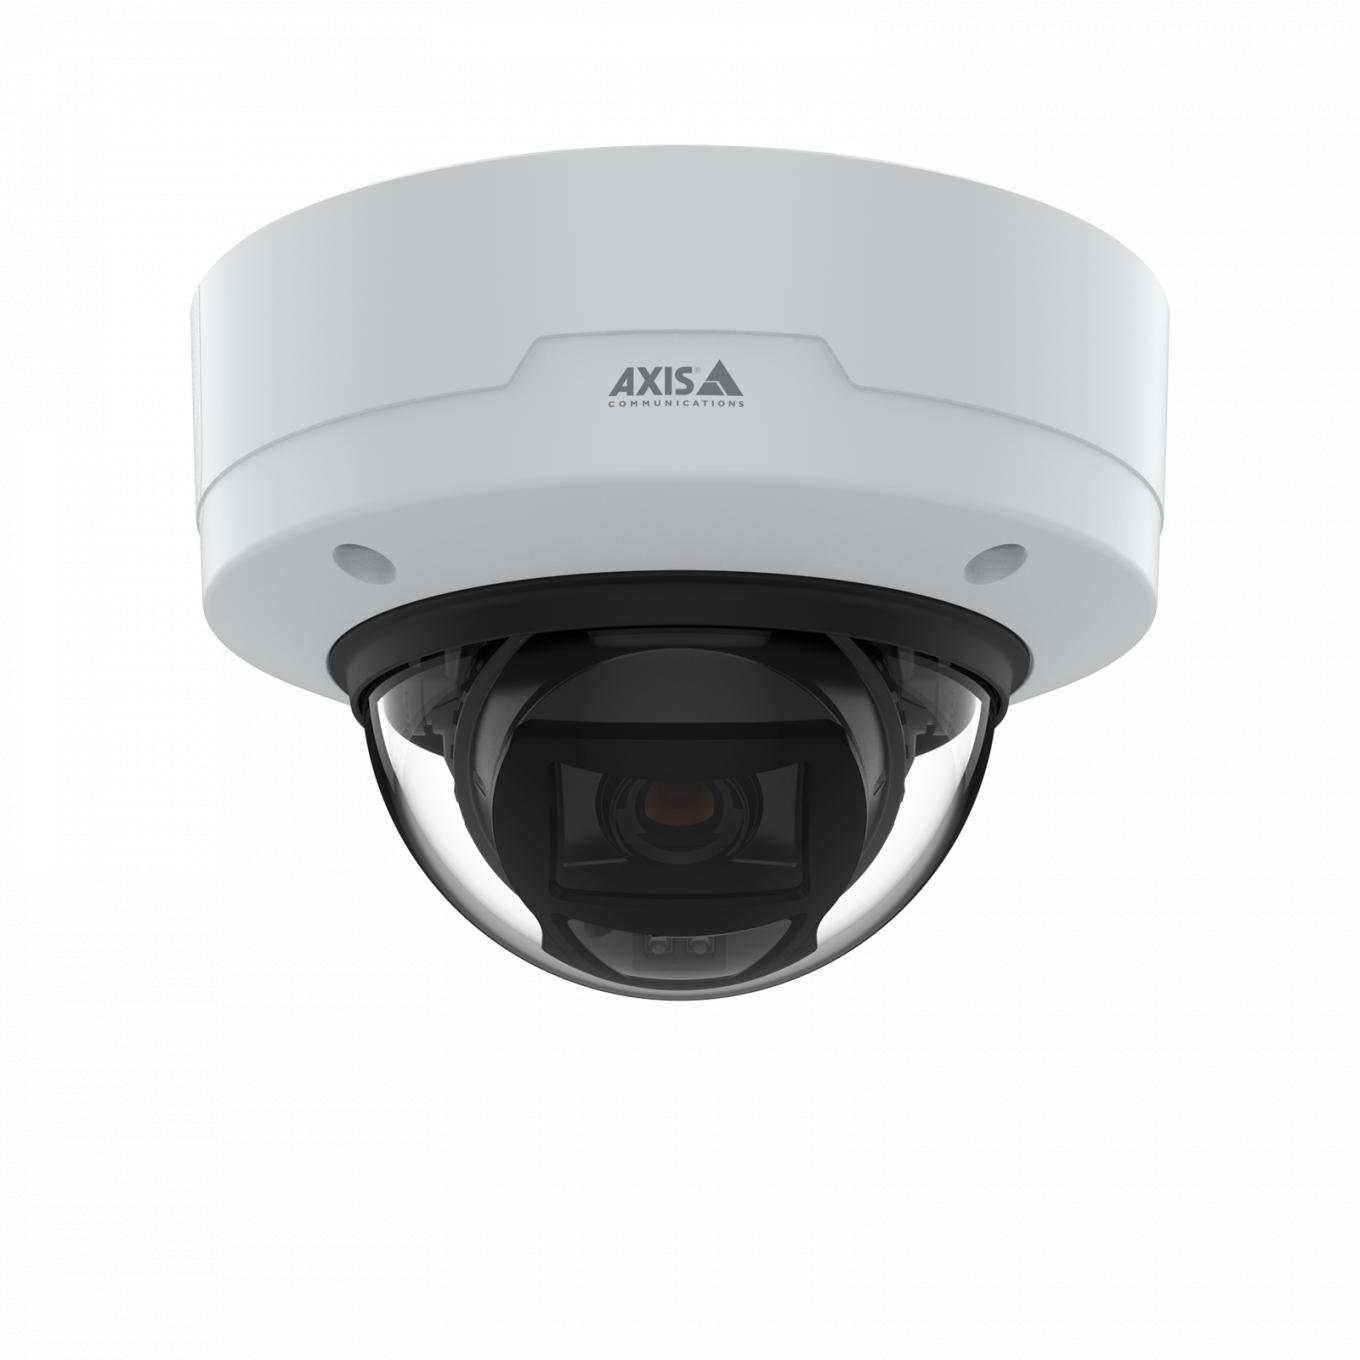 AXIS P3265-LVE Dome Camera montada no teto vista pela frente